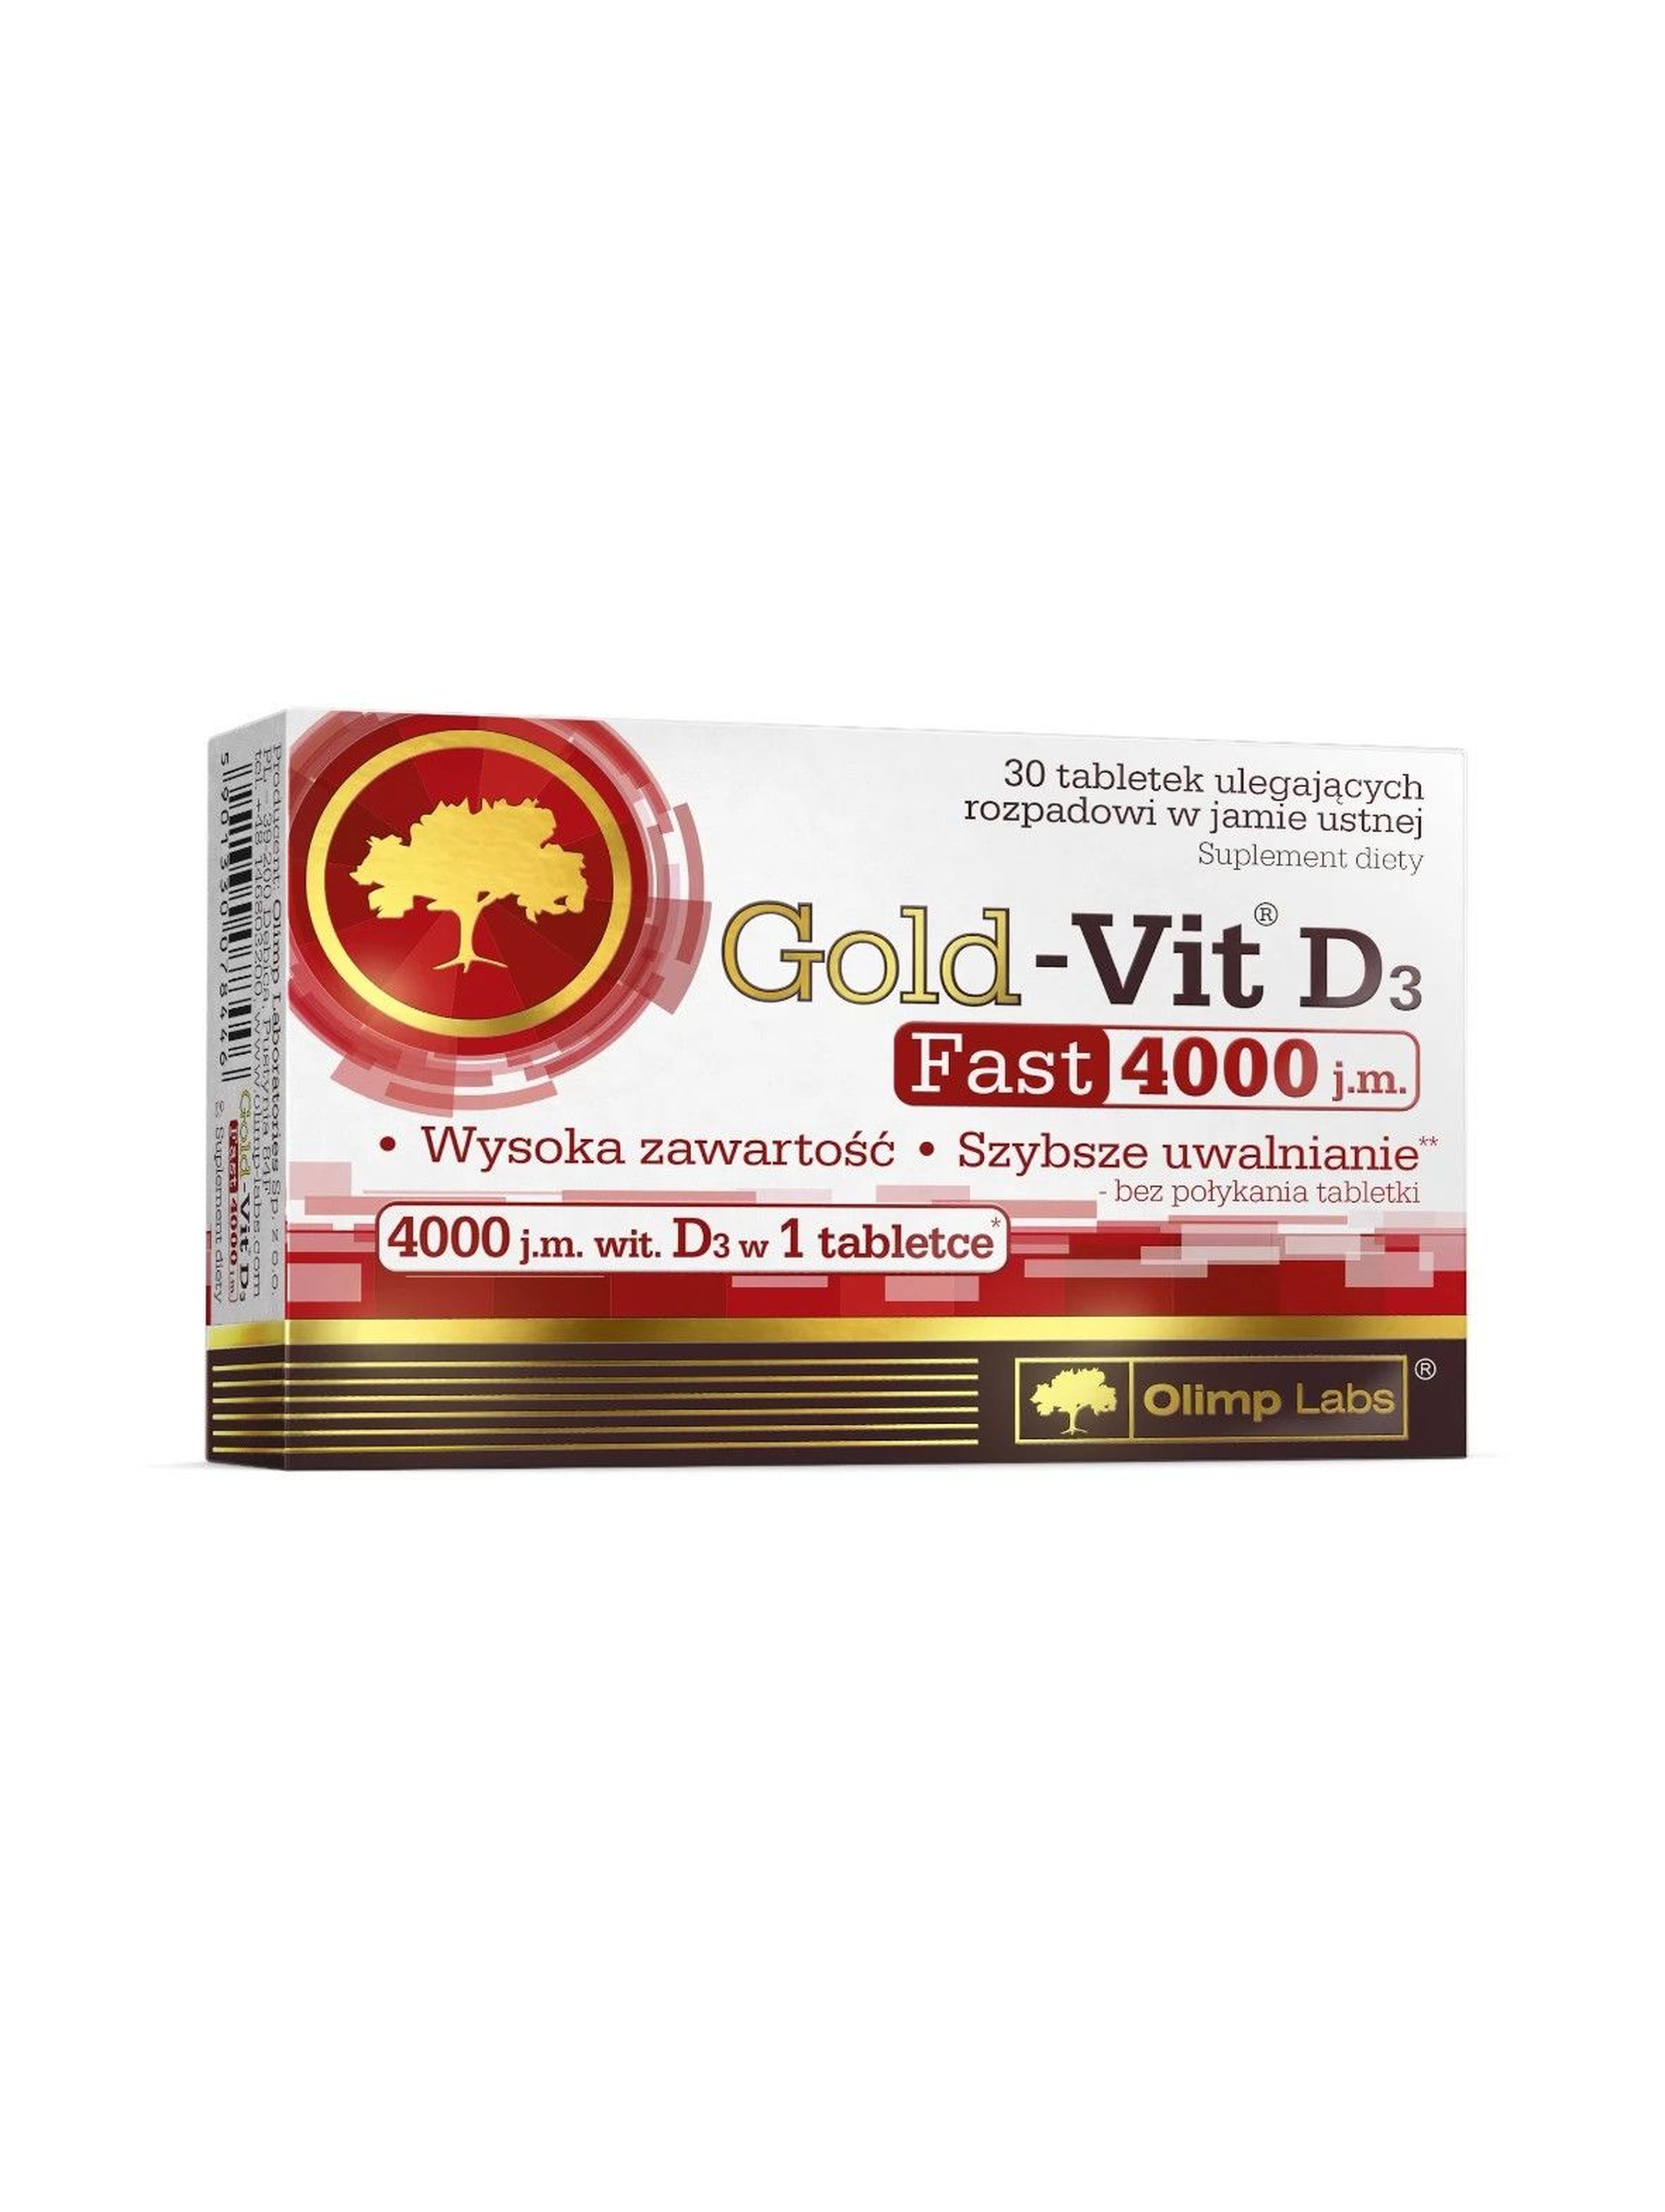 Gold-Vit D3 FAST 4000 j.m. - 30 tabletek